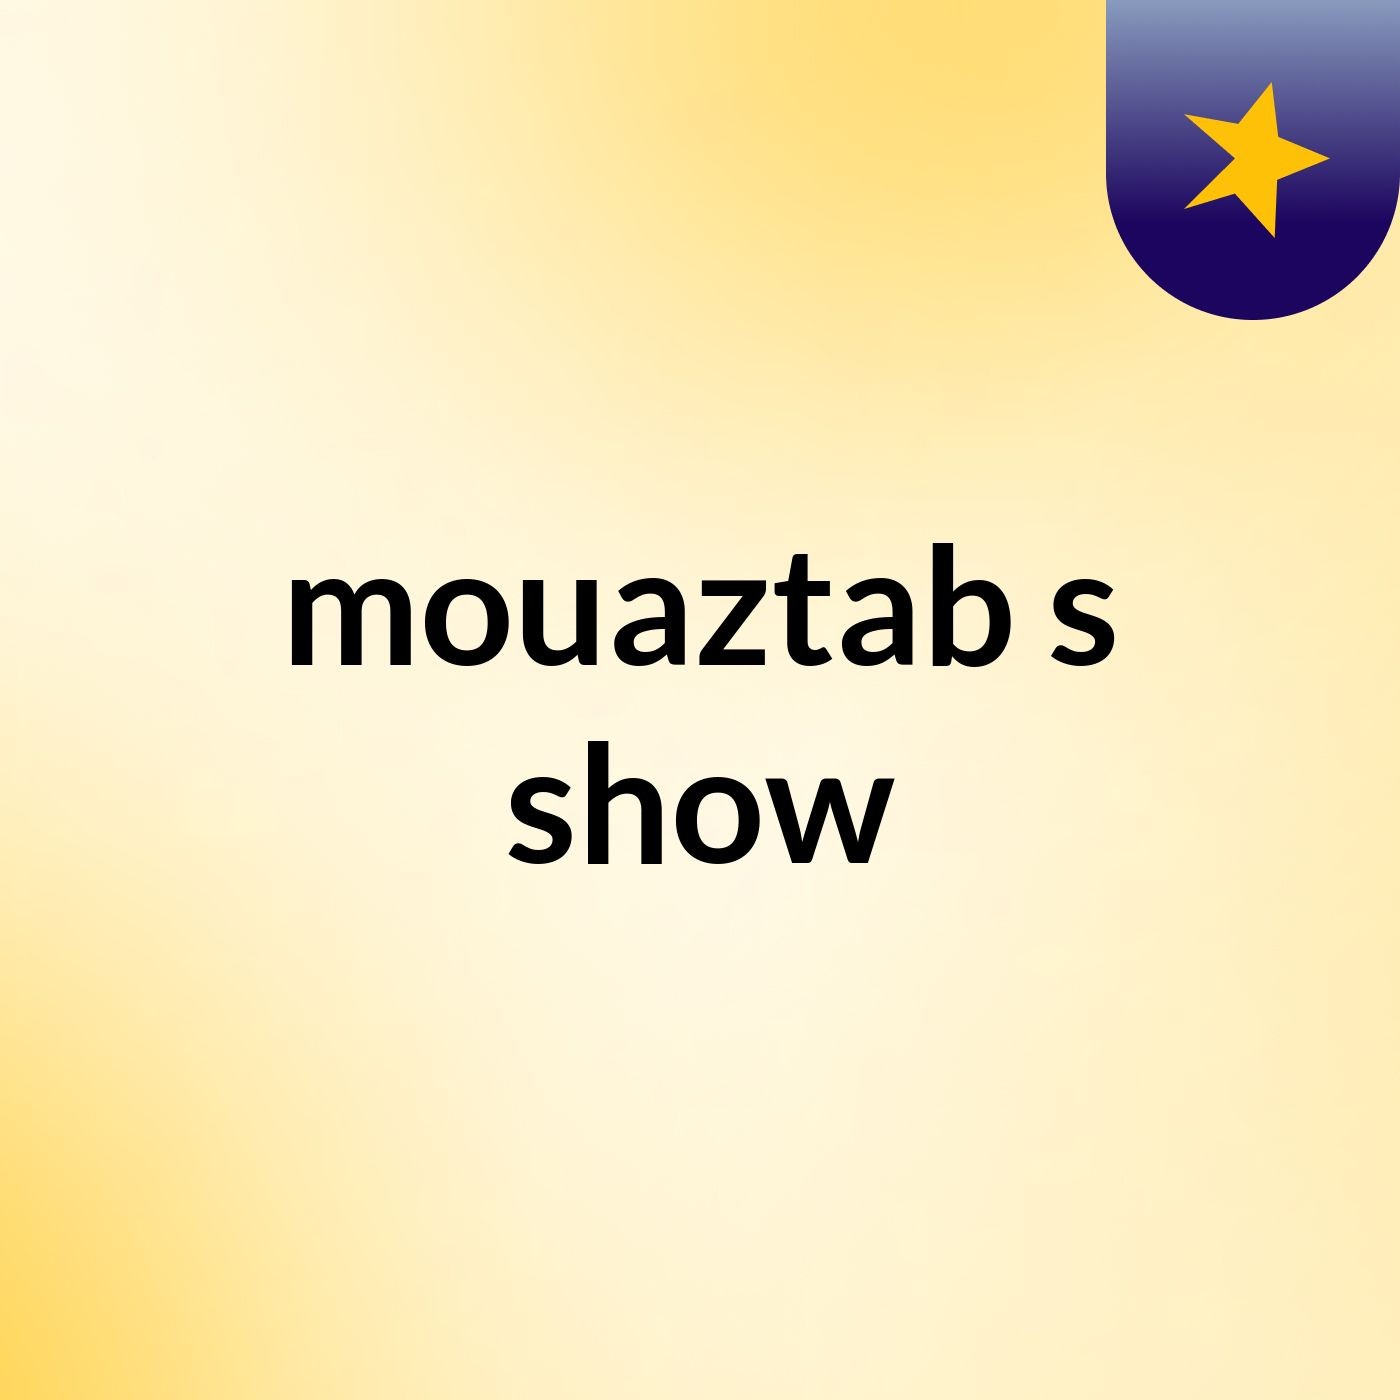 mouaztab's show